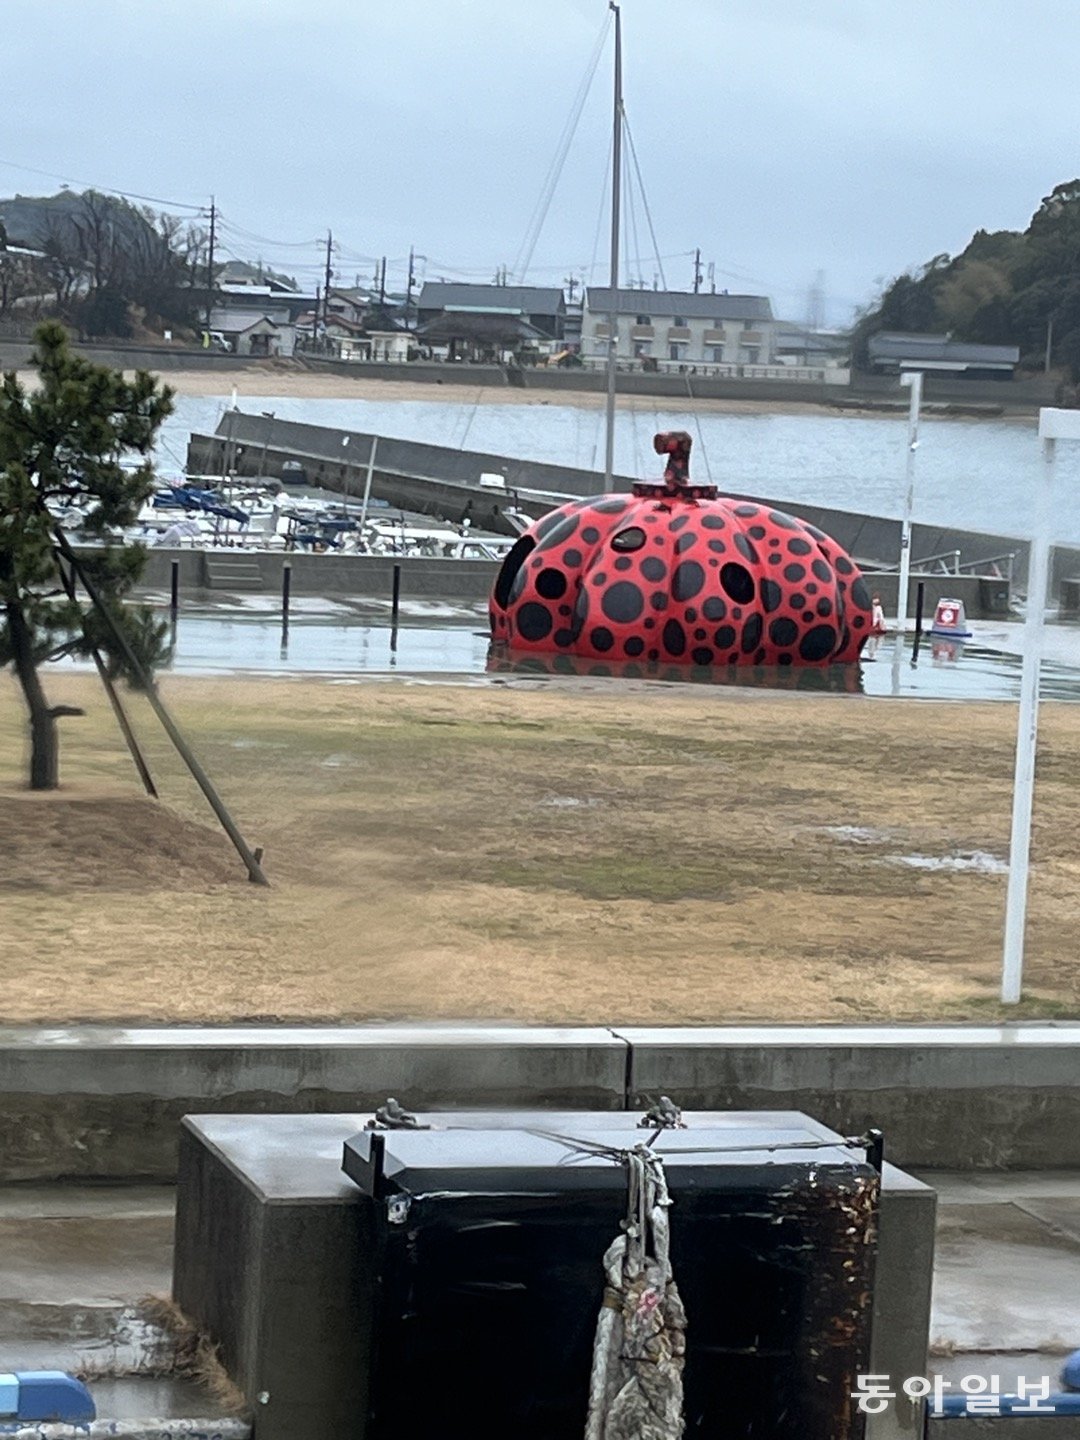 가가와현 다카마쓰 항에서 페리를 타면 닿는 선착장 미야우라 항 부두에 설치된 쿠사마 야요이의 작품 빨간 호박. 나오시마=서영아 기자 sya@donga.com